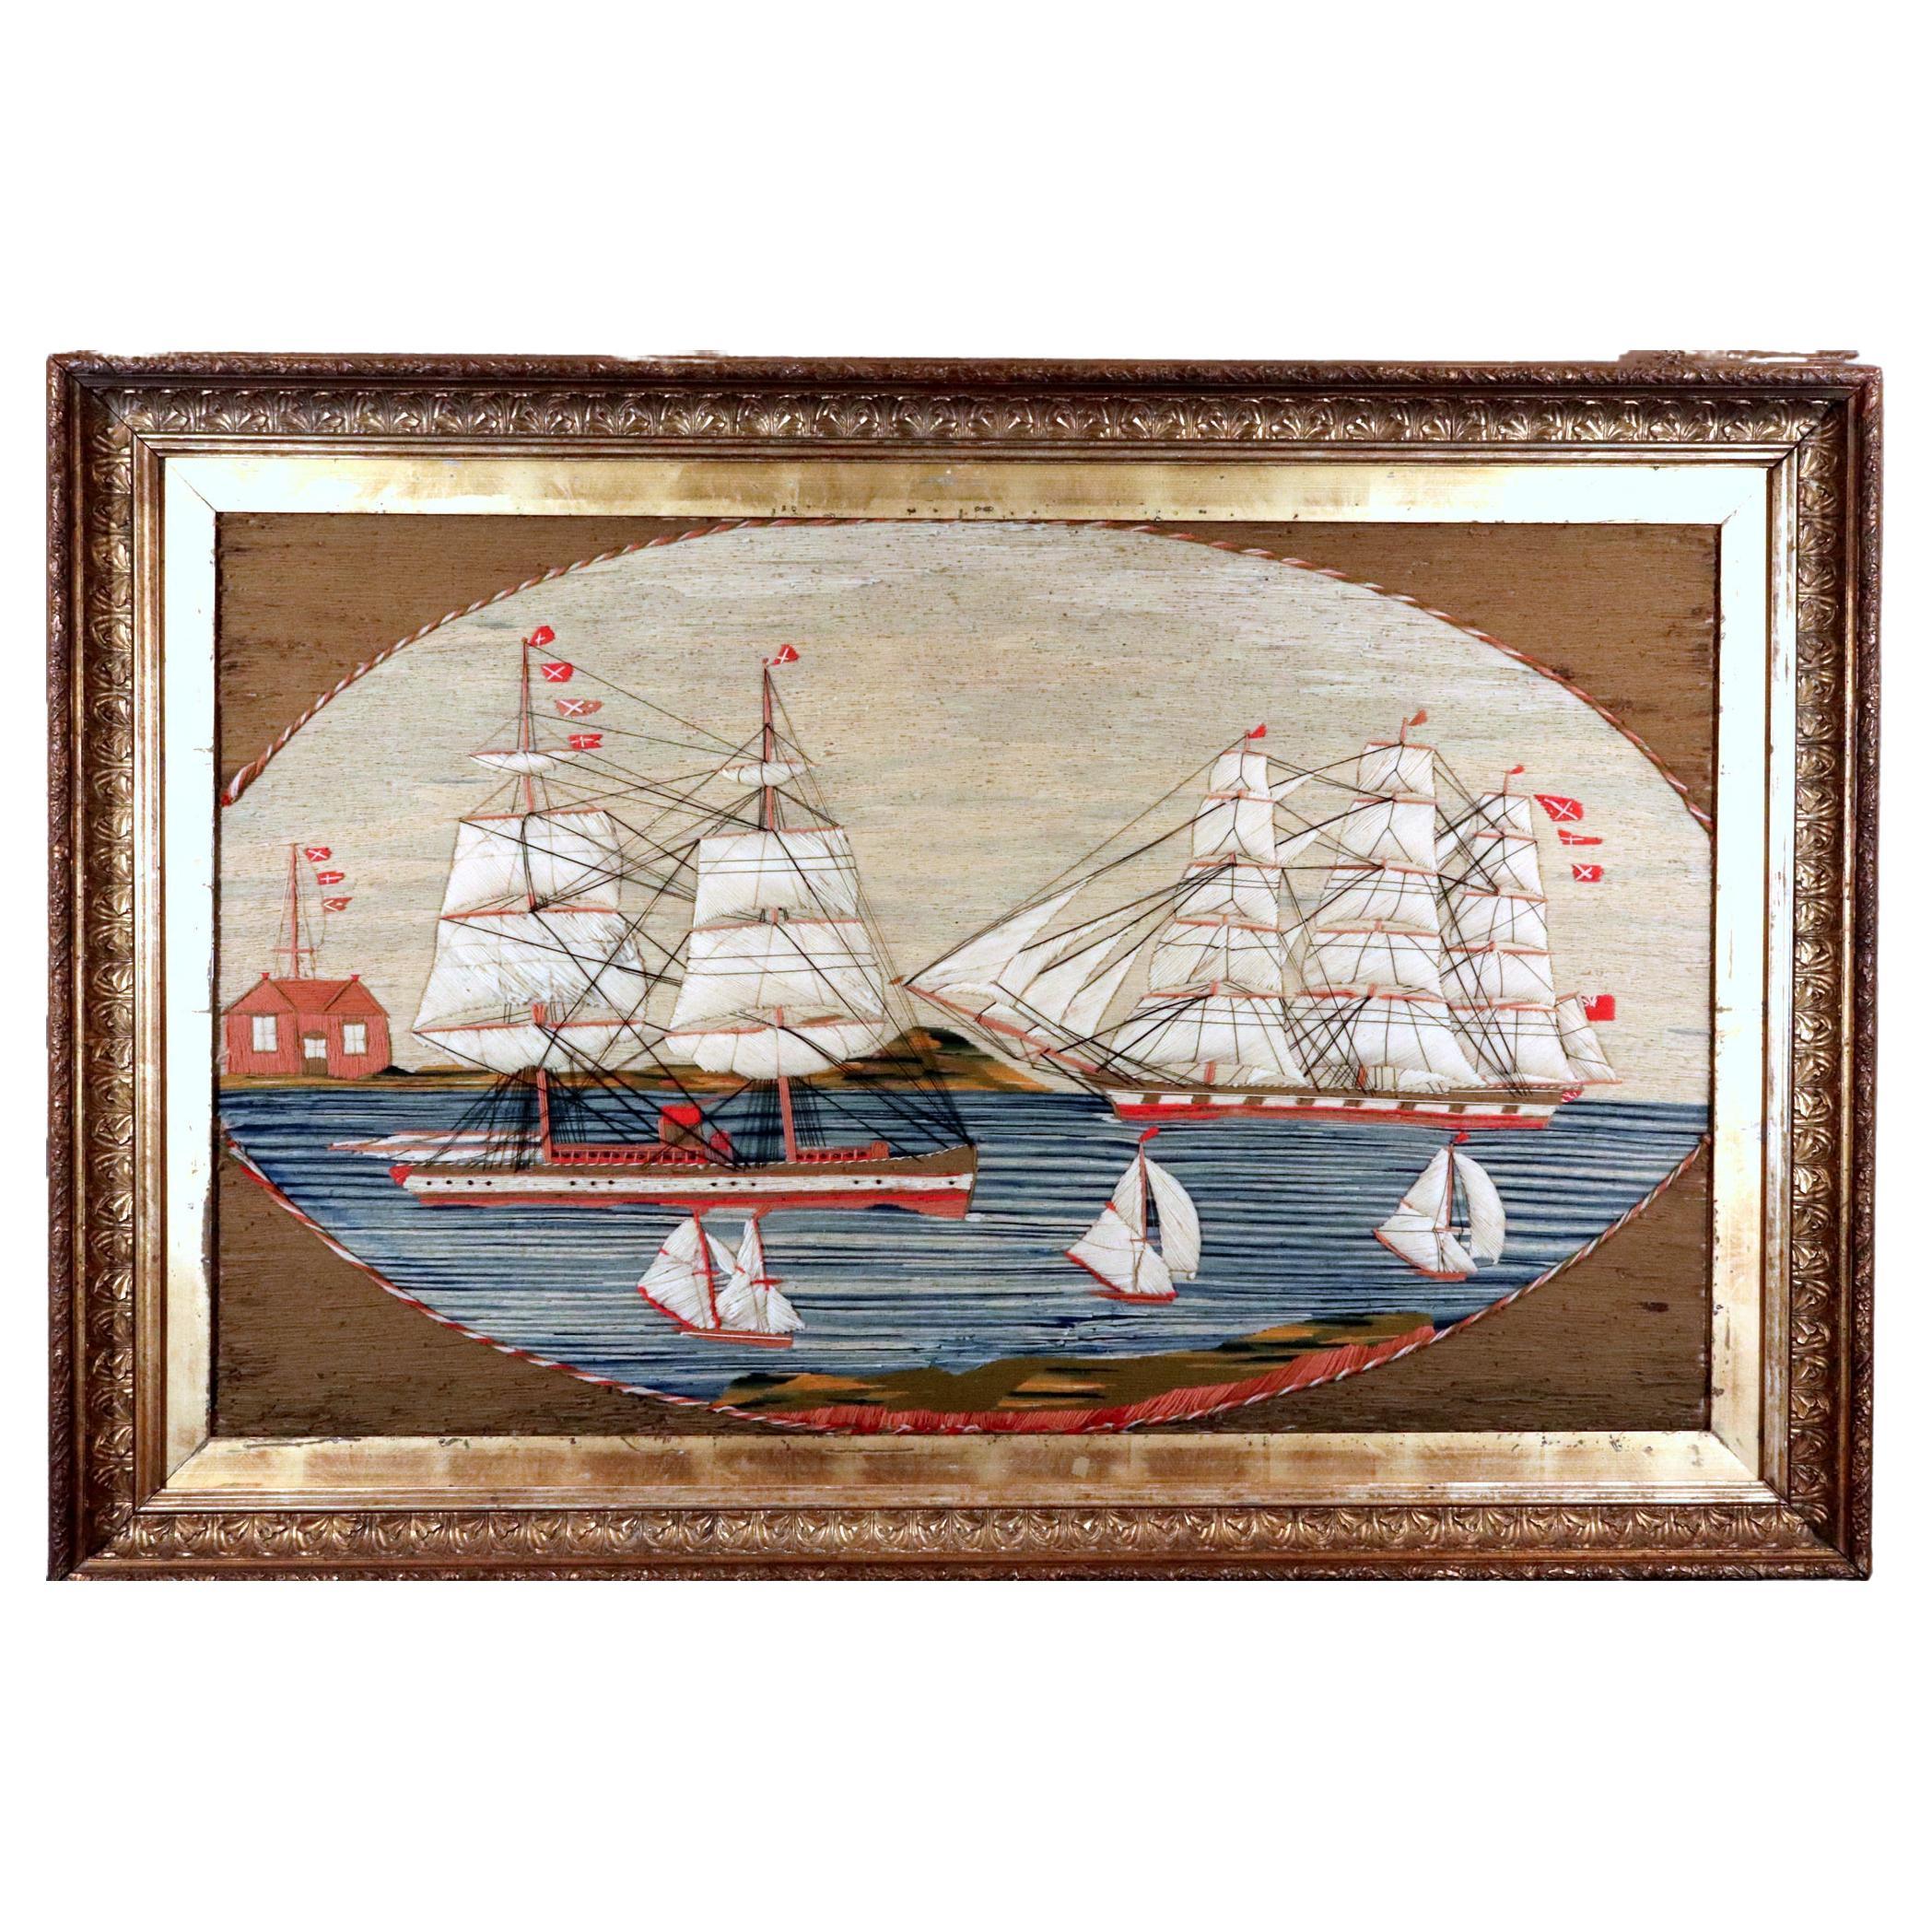 British Sailor's Woolwork-Bilder mit fünf Schiffen in einer Bucht